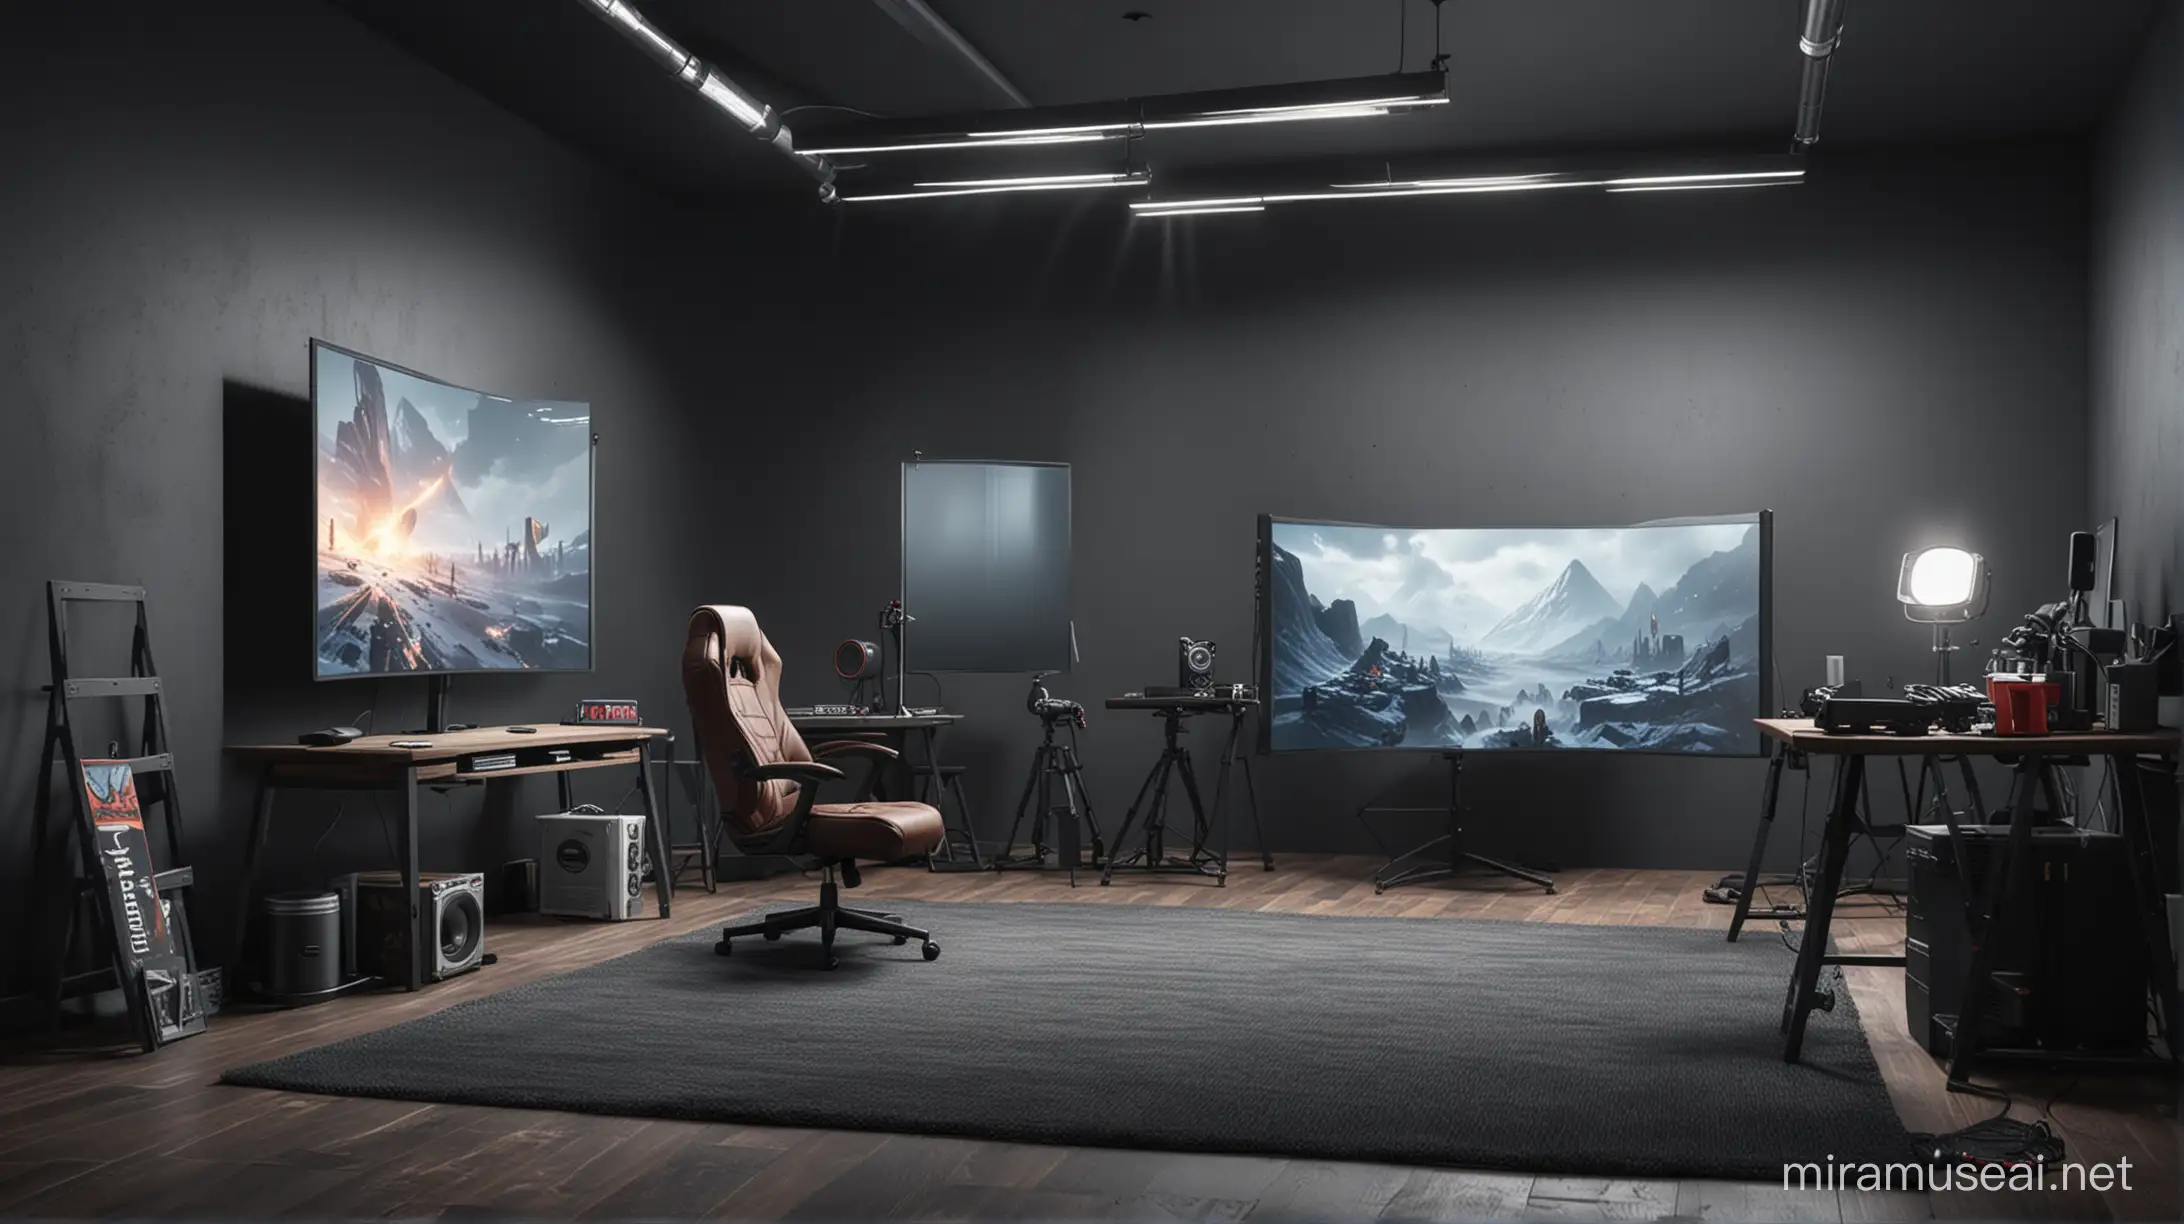 tạo một hình nền chân thực, khung cảnh phòng studio livestream chơi game của một game thủ. Phong cách minimalis, hiện đại, thoáng đãng, ánh sáng điện ảnh.